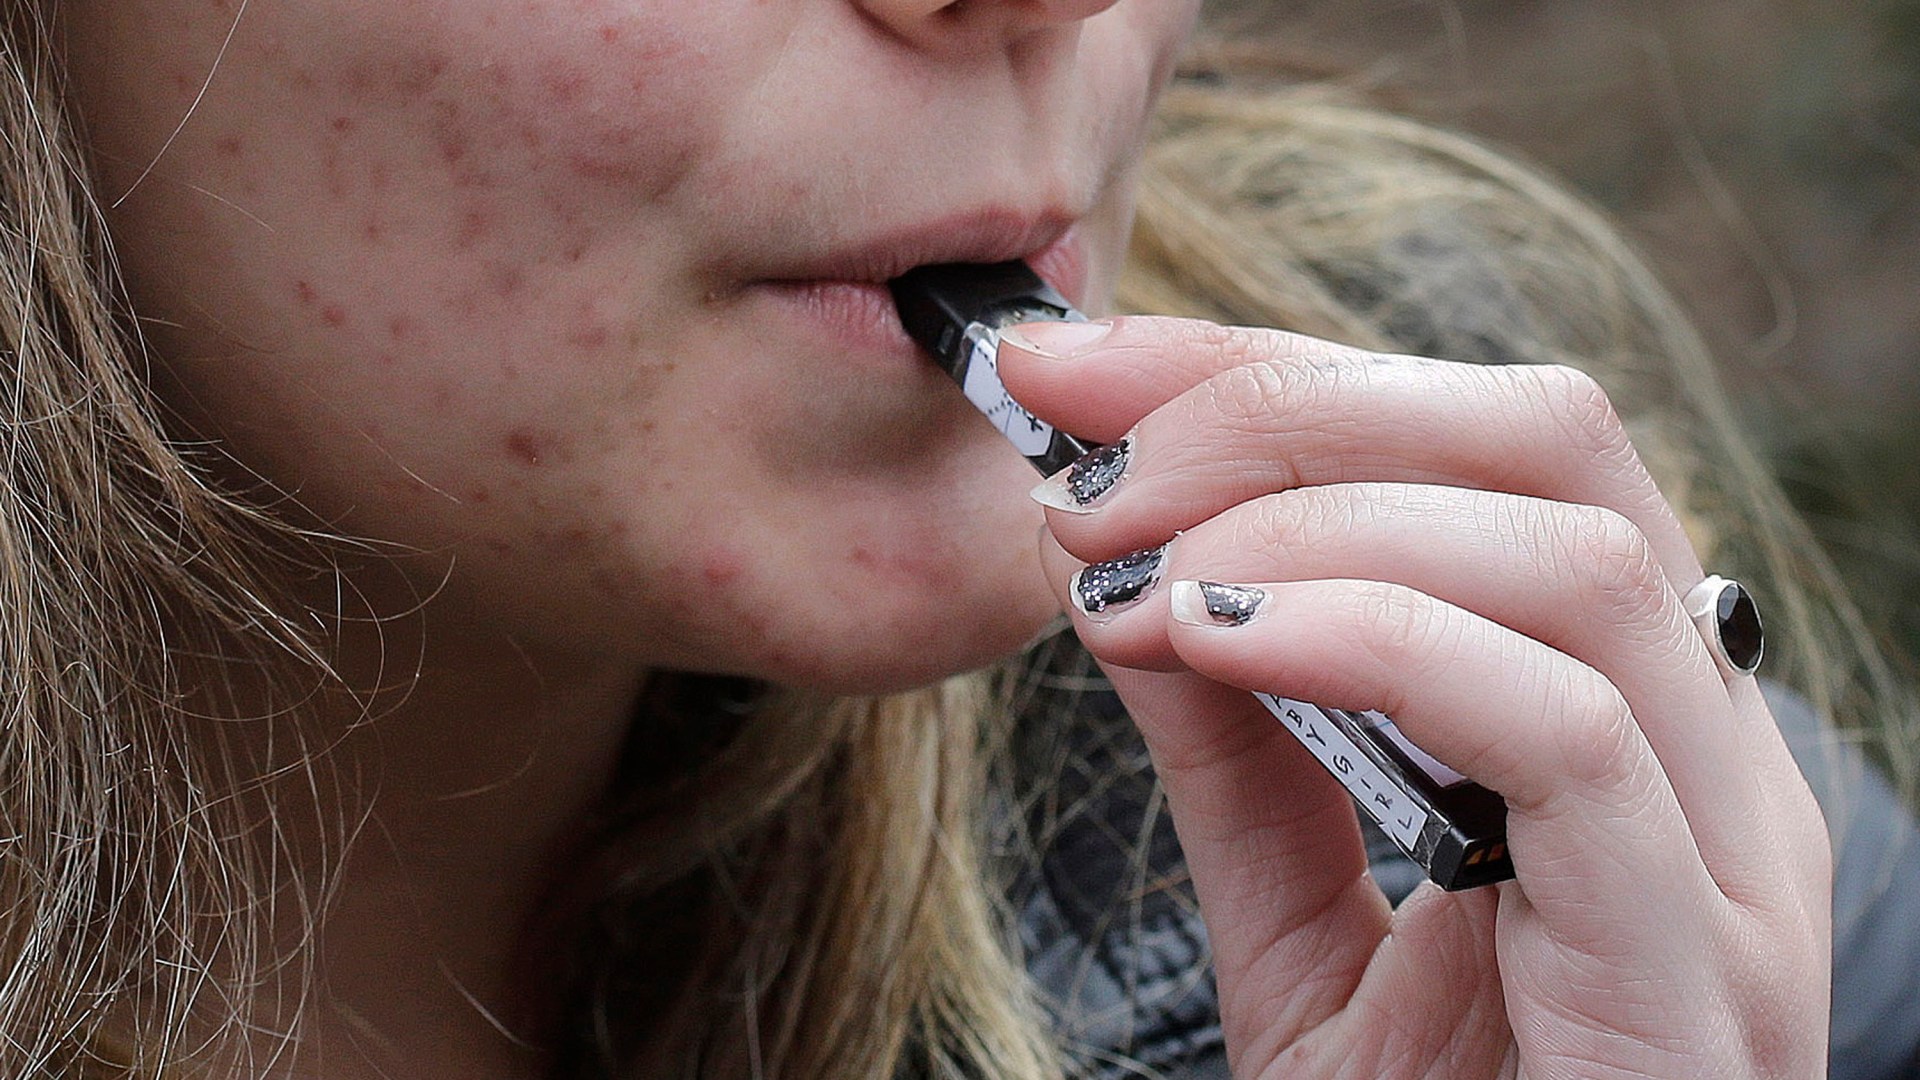 El mapa revela los puntos de acceso dudosos de vapeo del Reino Unido donde los cigarrillos electrónicos ilegales “contienen sustancias químicas nocivas” y se han incautado 1,2 millones